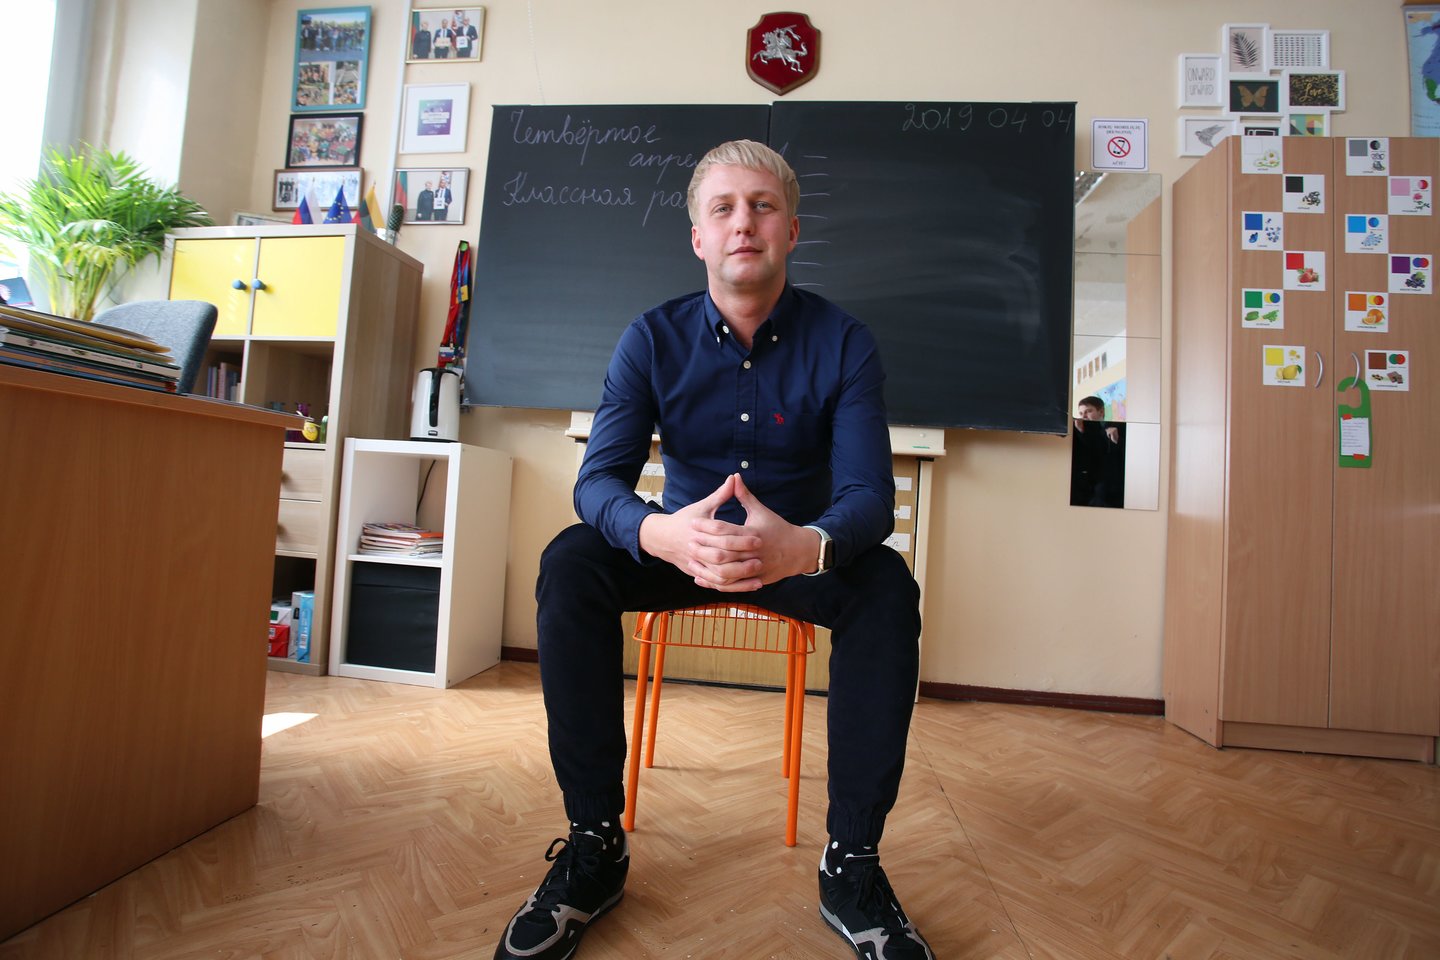  S.Kozlovas pirma tapo žurnalistu, paskui - mokytoju. <br> M.Patašiaus nuotr. 